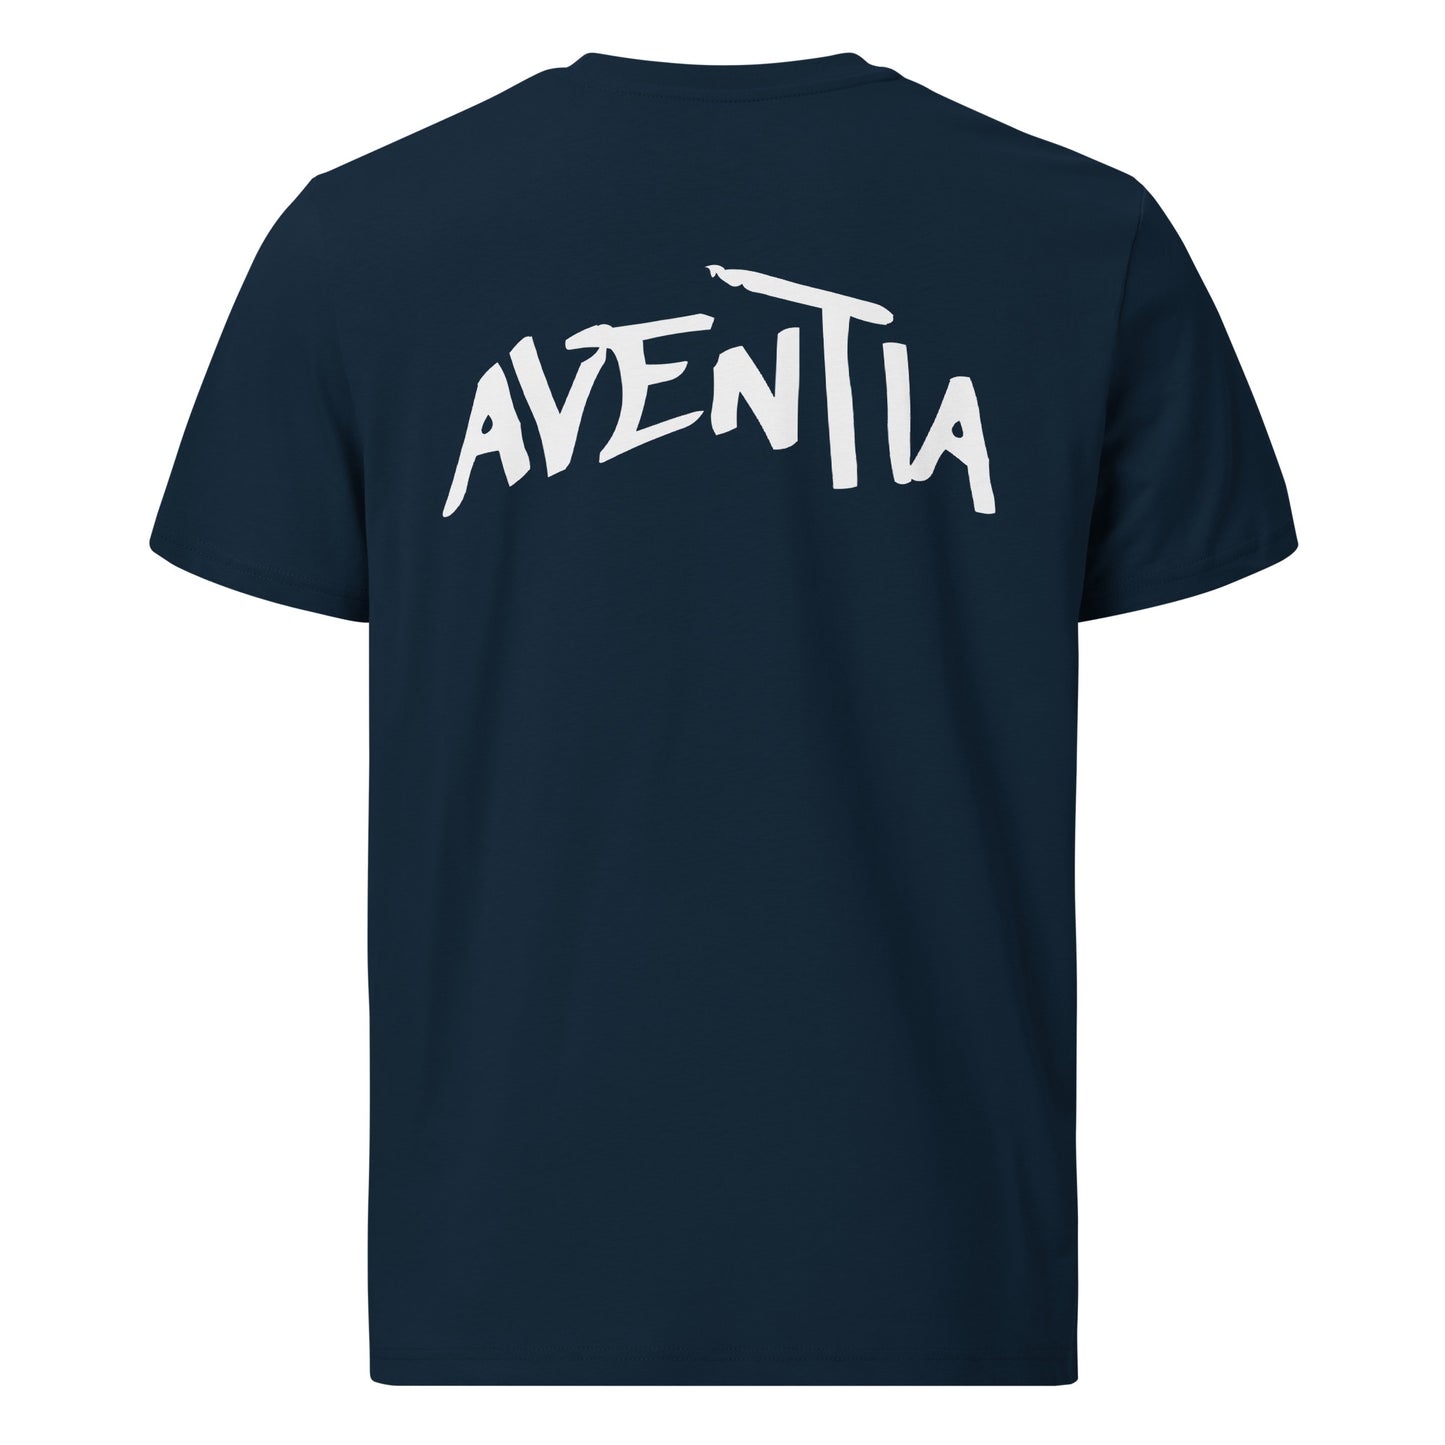 Aventia Shirt